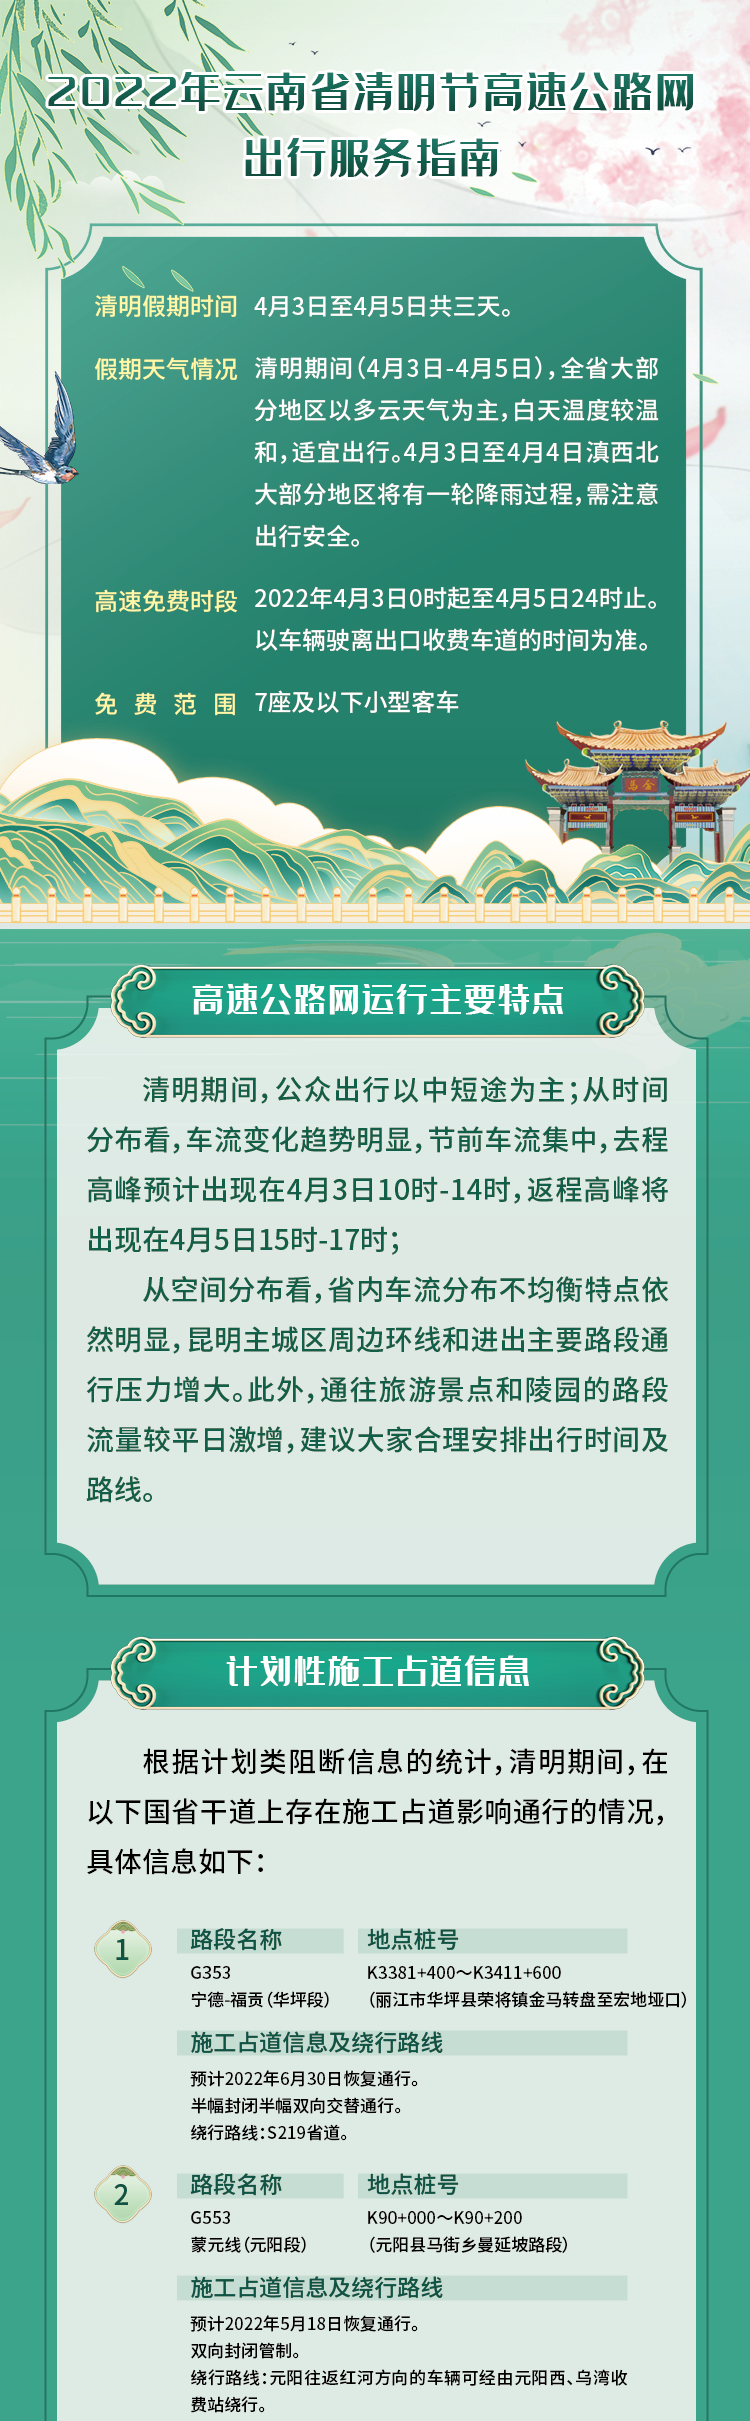 2022年云南省清明节高速公路网出行服务指南.png